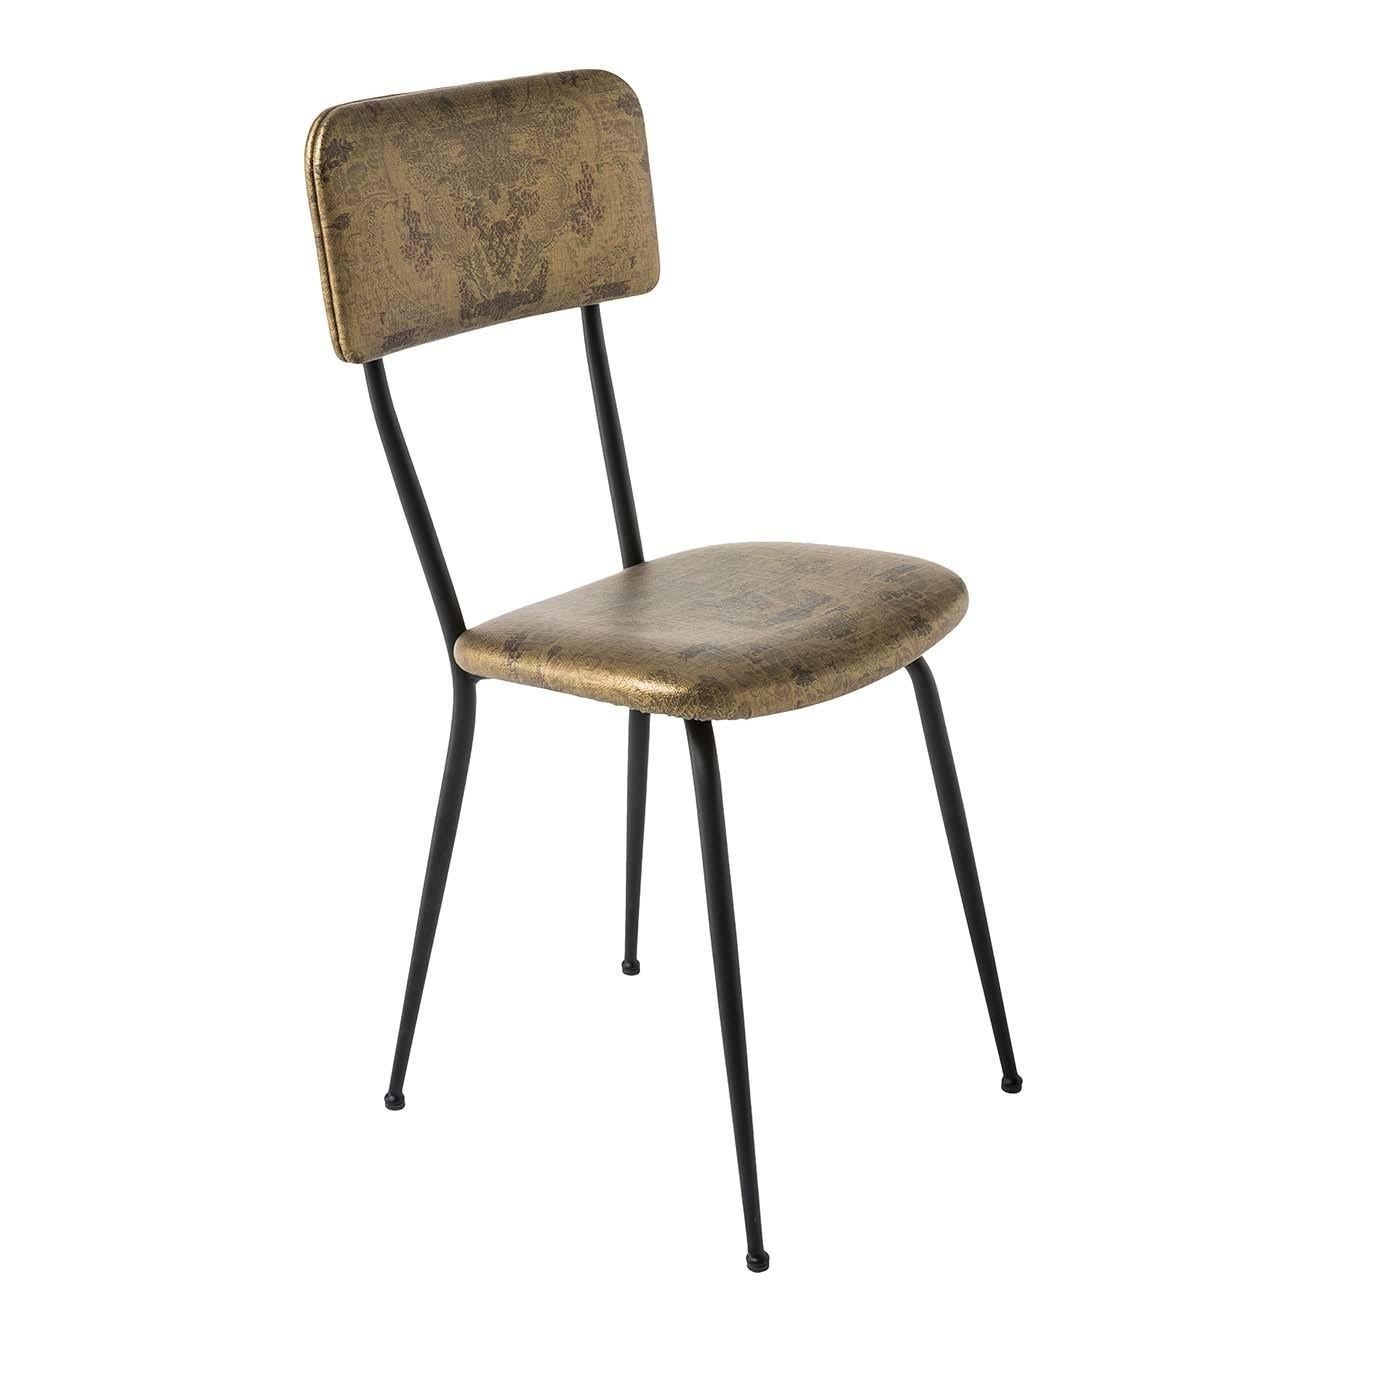 Dieser Stuhl hat einen Vintage-Look, der durch die goldfarbene Oberfläche des feuerfesten, technischen Gewebes, mit dem Sitz und Rückenlehne gepolstert sind, hervorgehoben wird. Sitz und Rückenlehne sind mit Polyurethan und geschwungenen